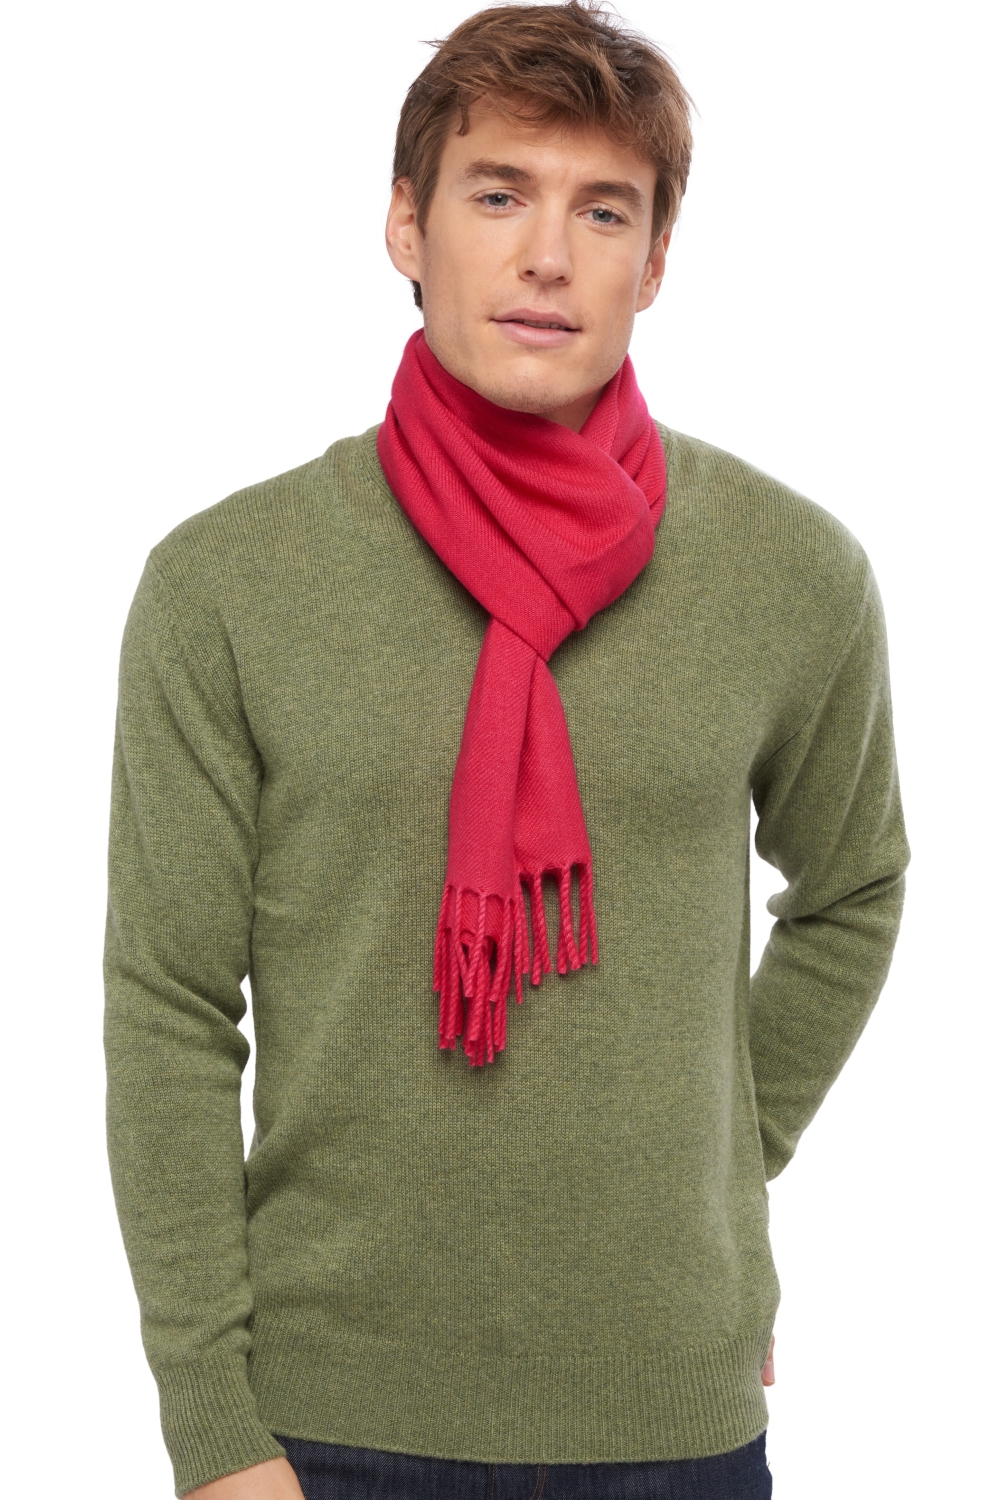 Cashmere accessories scarves mufflers zak170 bright rose 170 x 25 cm